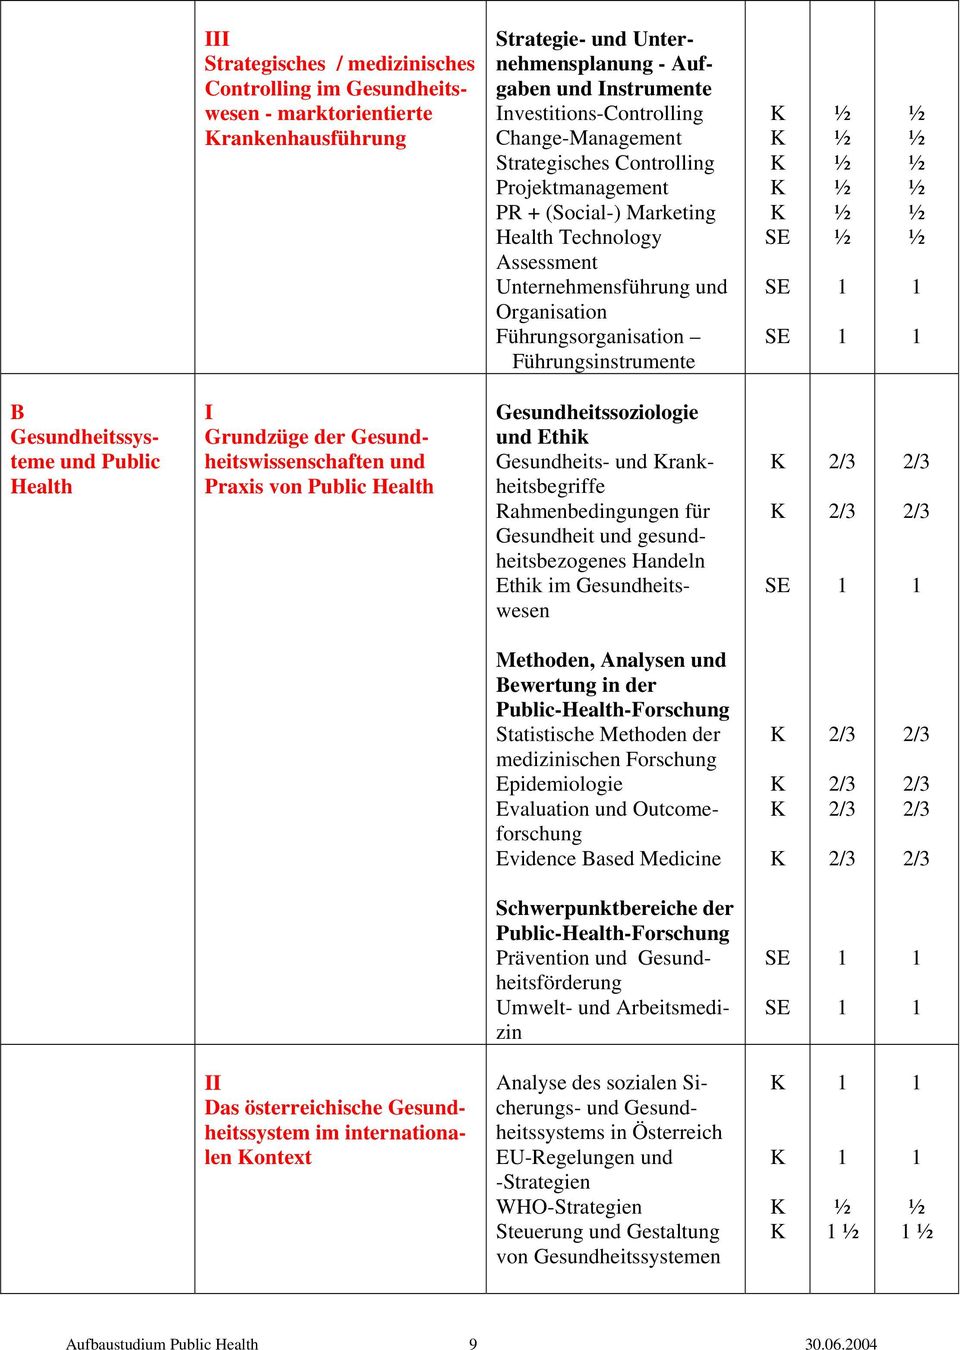 Gesundheitssysteme und Public Health Grundzüge der Gesundheitswissenschaften und Praxis von Public Health Gesundheitssoziologie und Ethik Gesundheits- und rankheitsbegriffe Rahmenbedingungen für